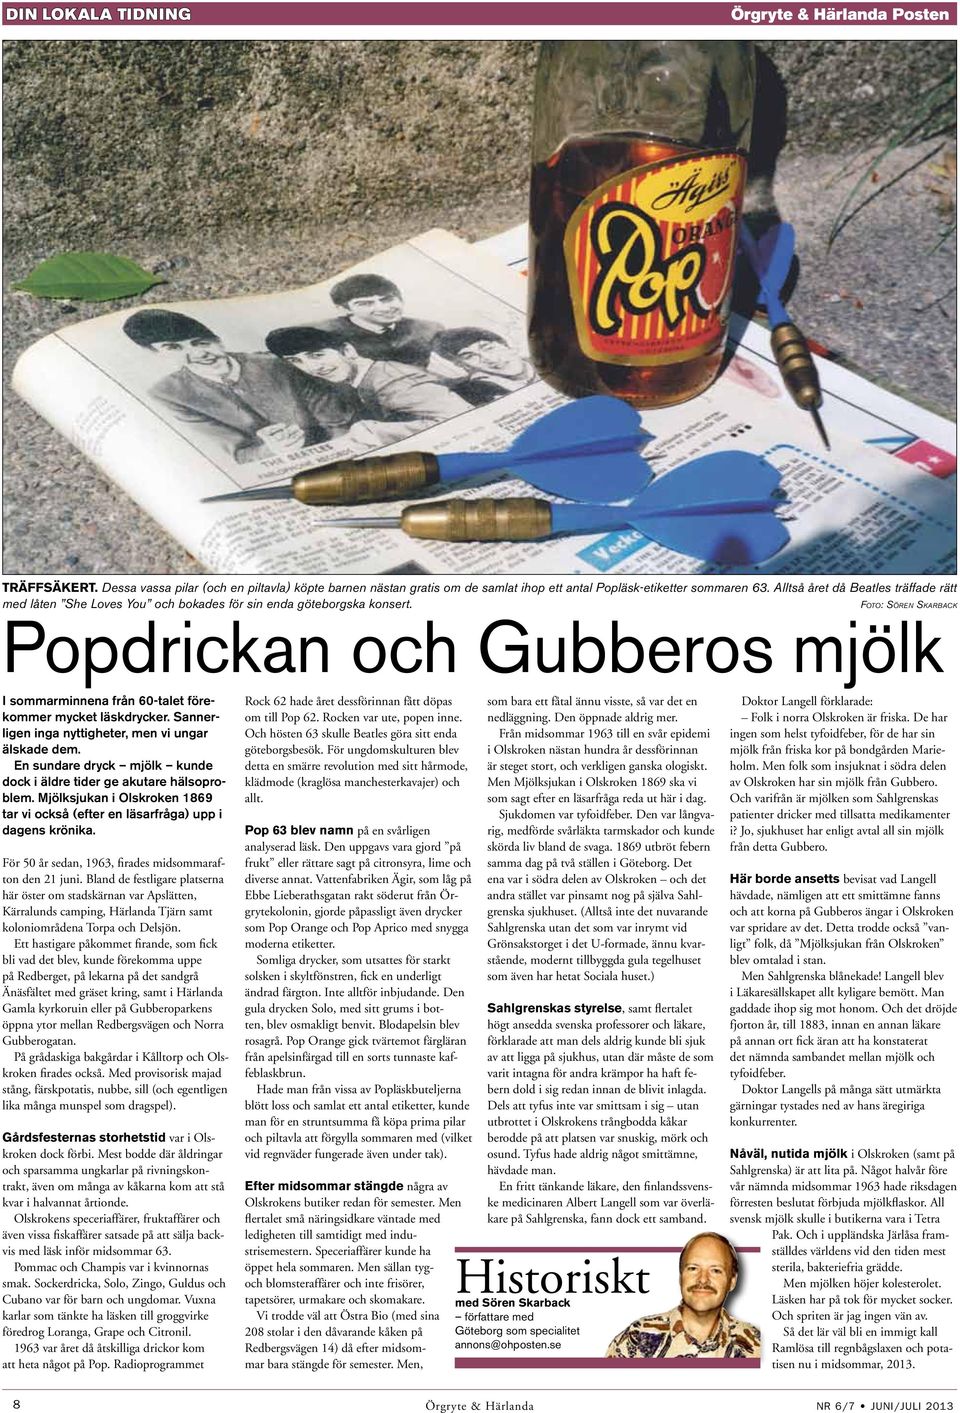 Foto: Sören Skarback Popdrickan och Gubberos mjölk I sommarminnena från 60-talet förekommer mycket läskdrycker. Sannerligen inga nyttigheter, men vi ungar älskade dem.